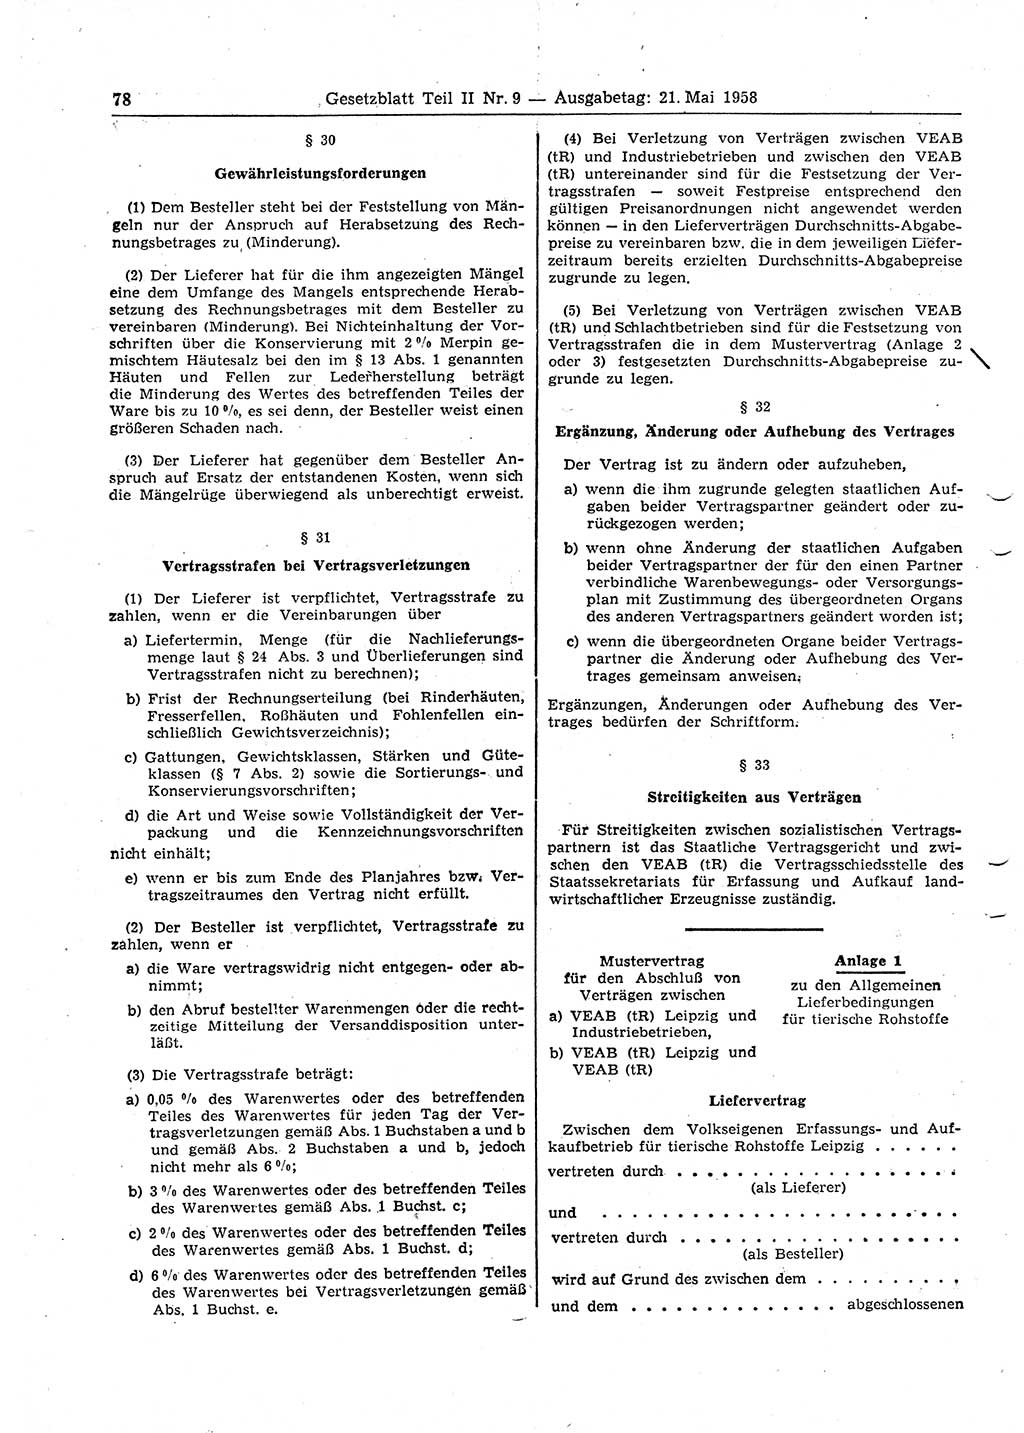 Gesetzblatt (GBl.) der Deutschen Demokratischen Republik (DDR) Teil ⅠⅠ 1958, Seite 78 (GBl. DDR ⅠⅠ 1958, S. 78)